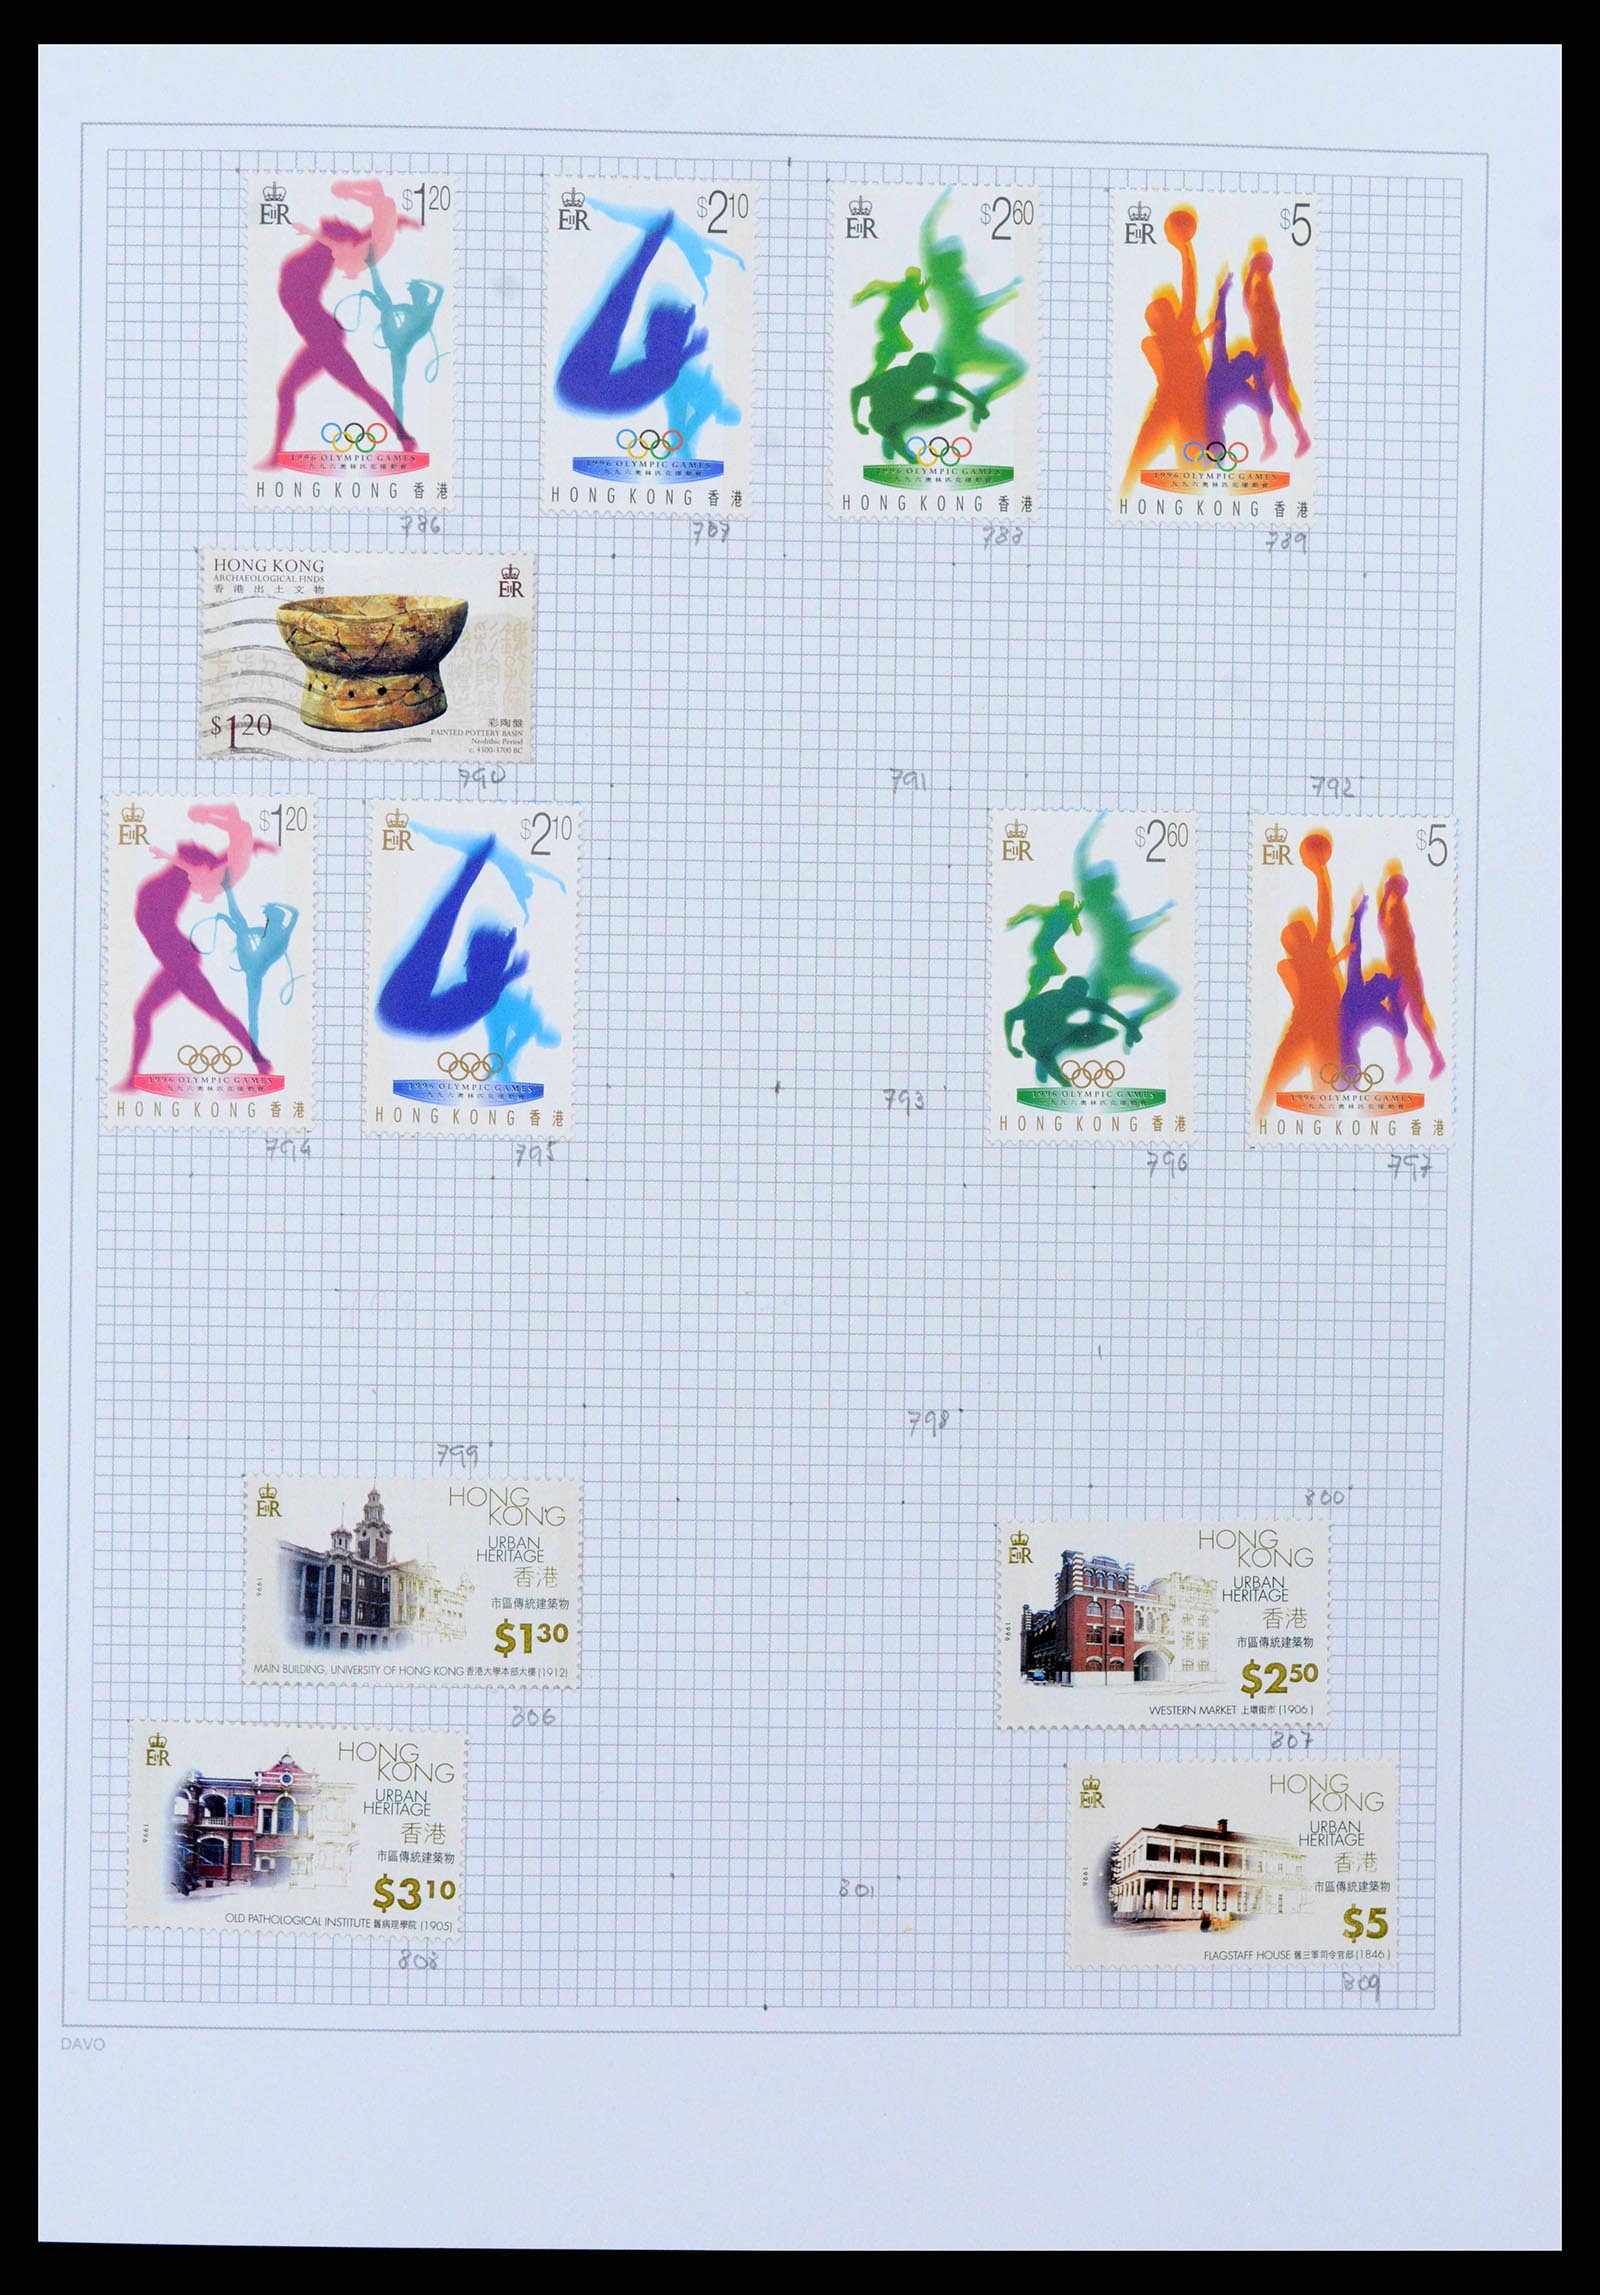 38158 0032 - Stamp collection 38158 Hong Kong 1862-1997.